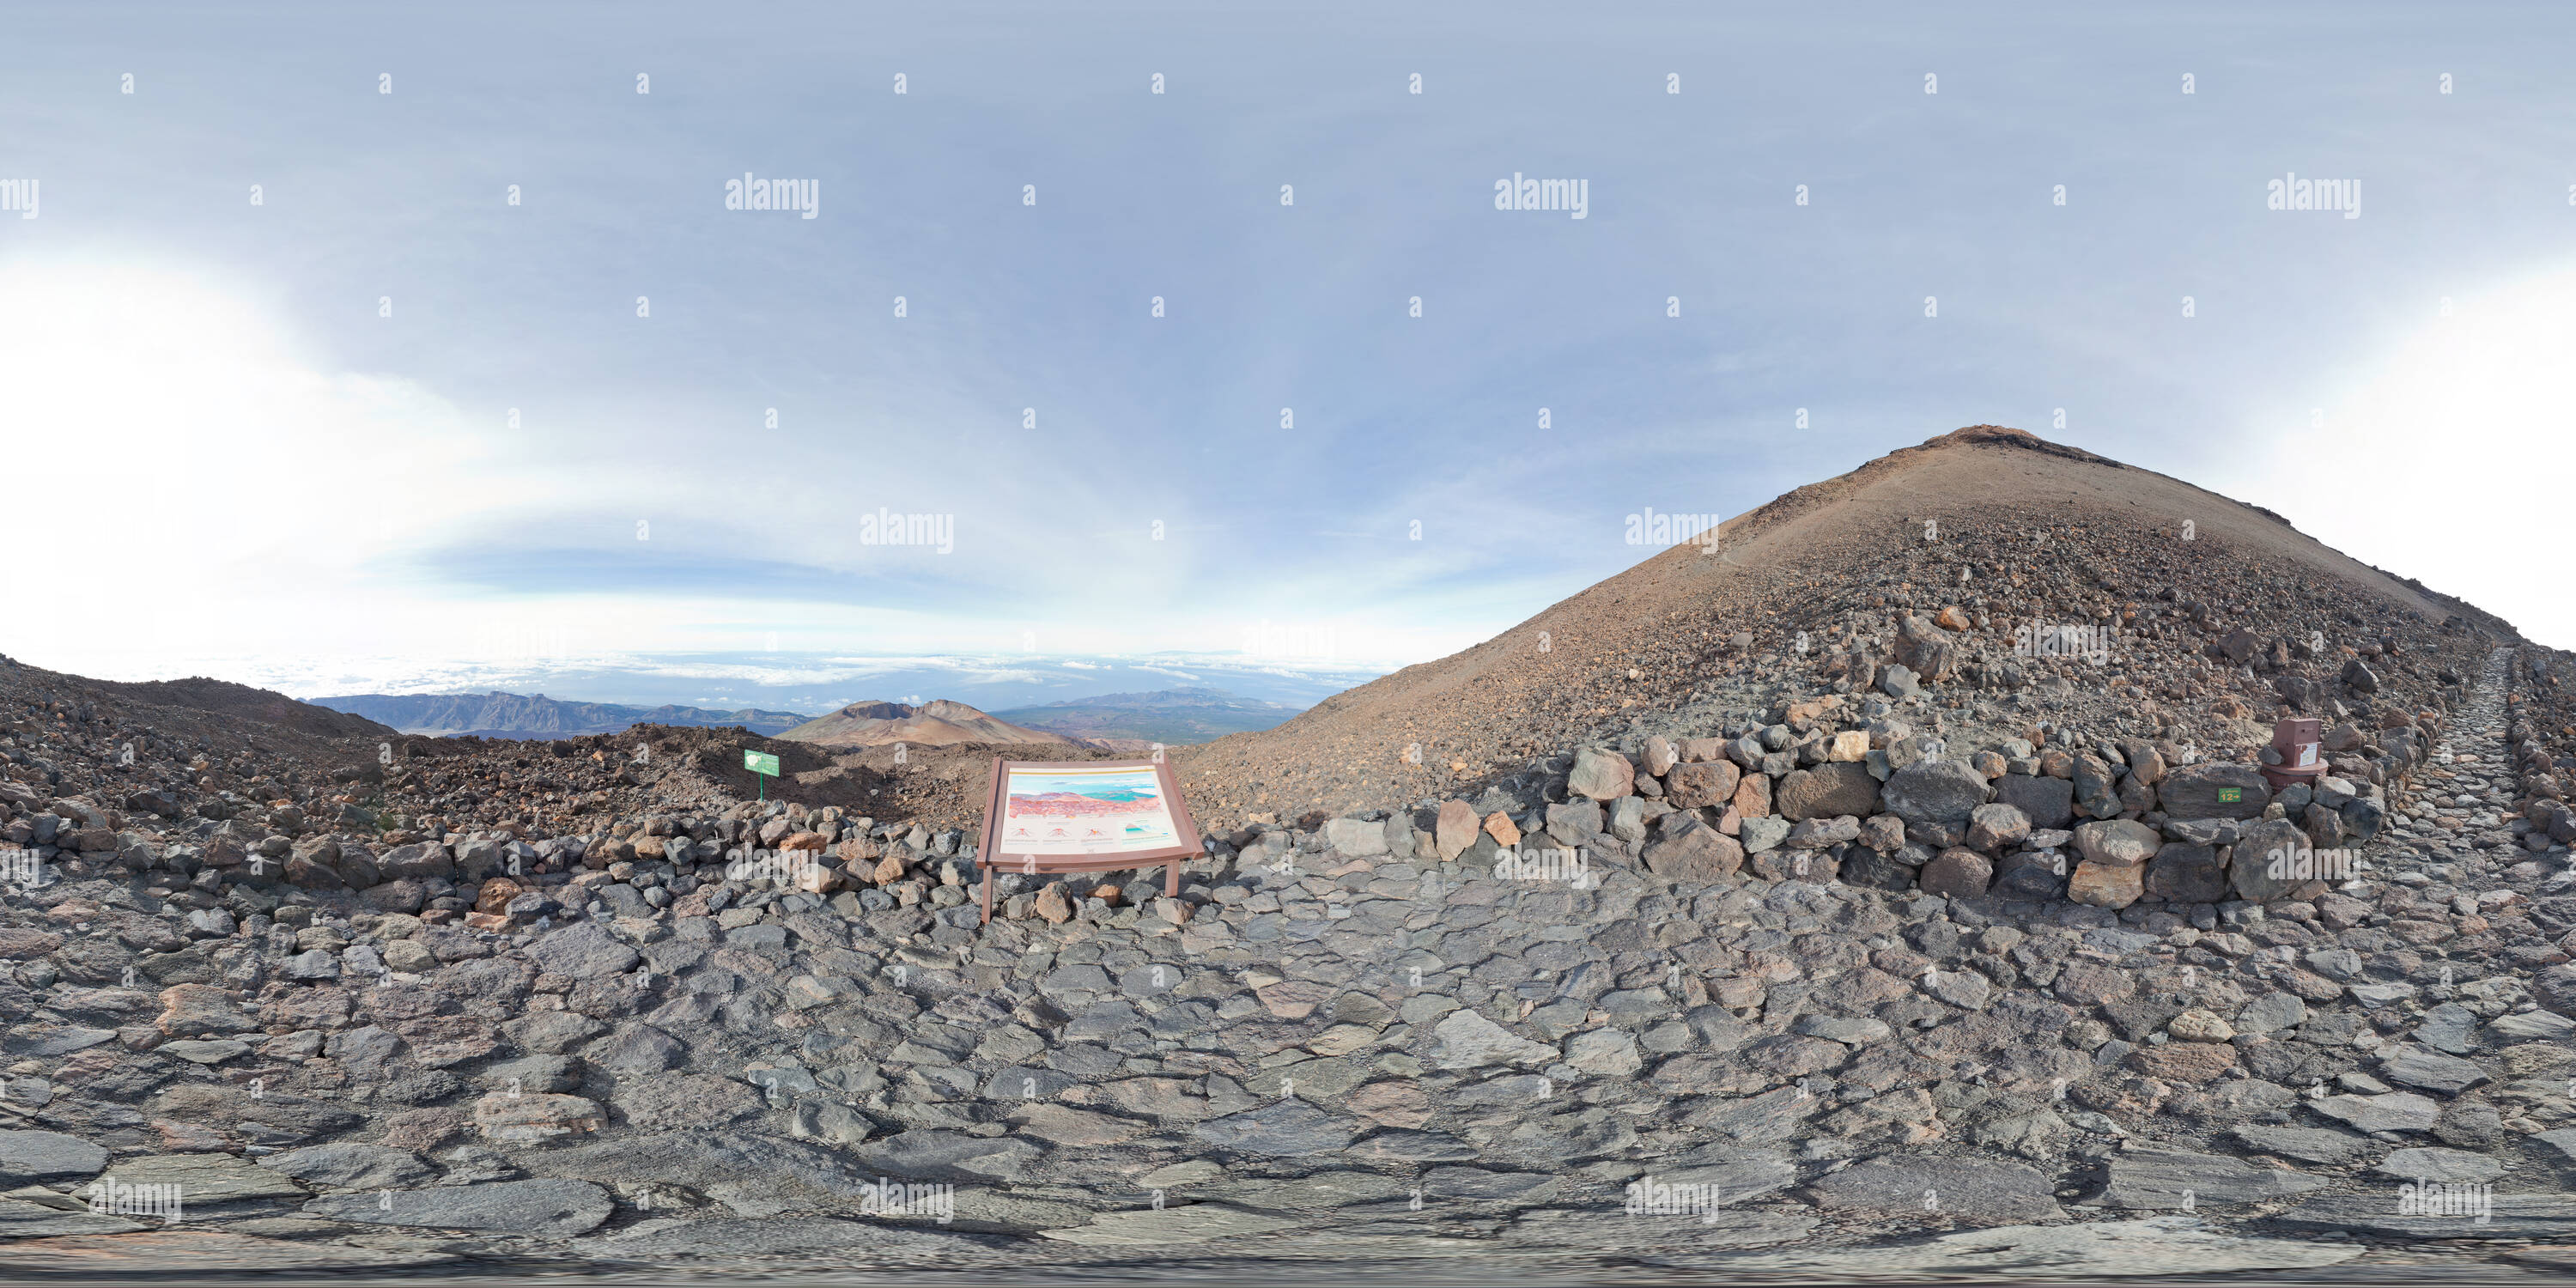 Vue panoramique à 360° de Mirador del Pico Viejo